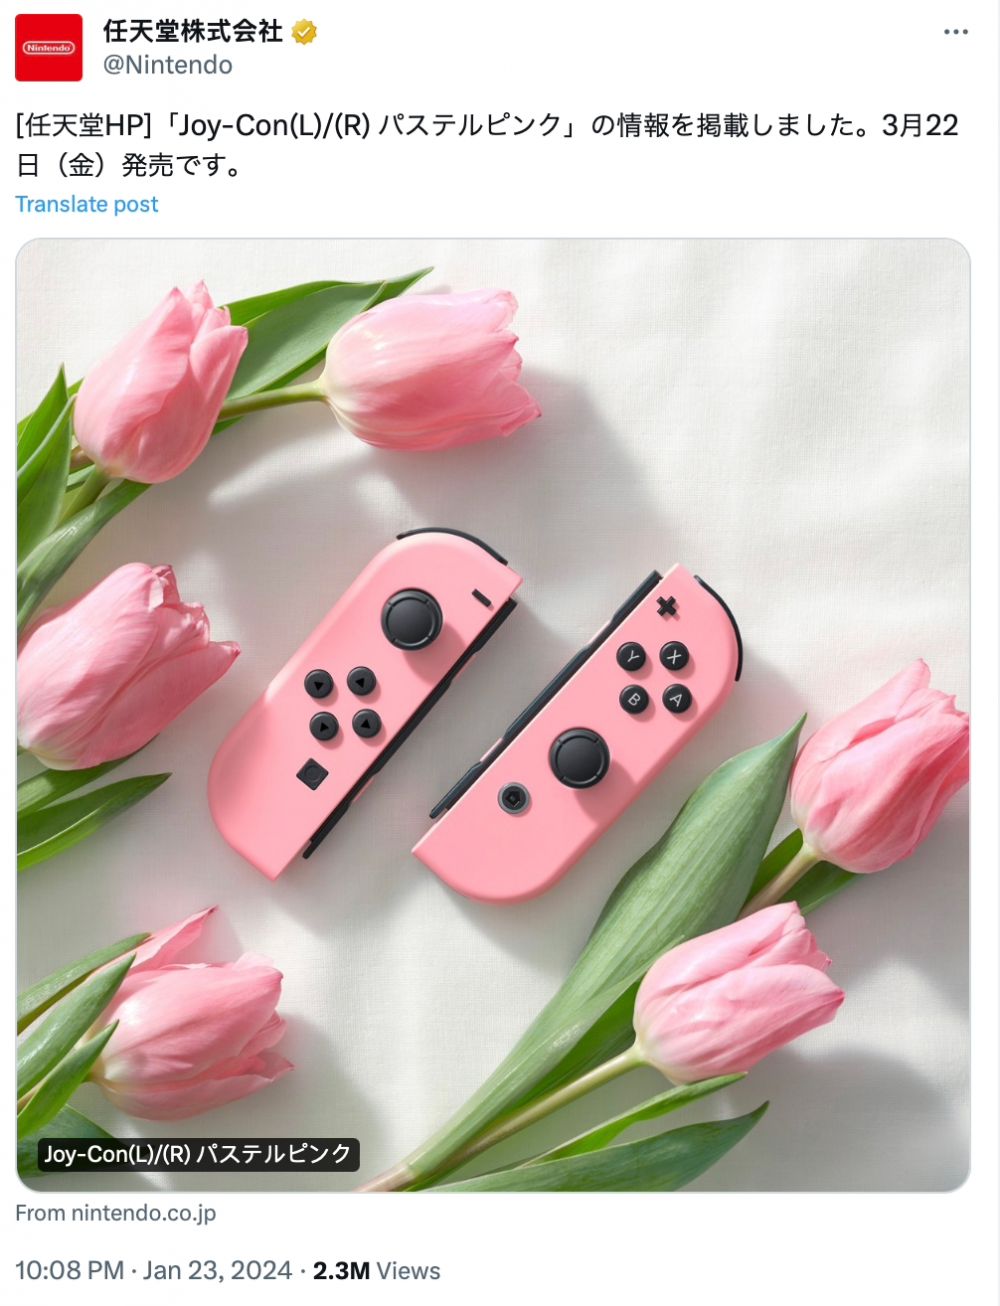 任天堂JoyCon手柄新增浅粉色款